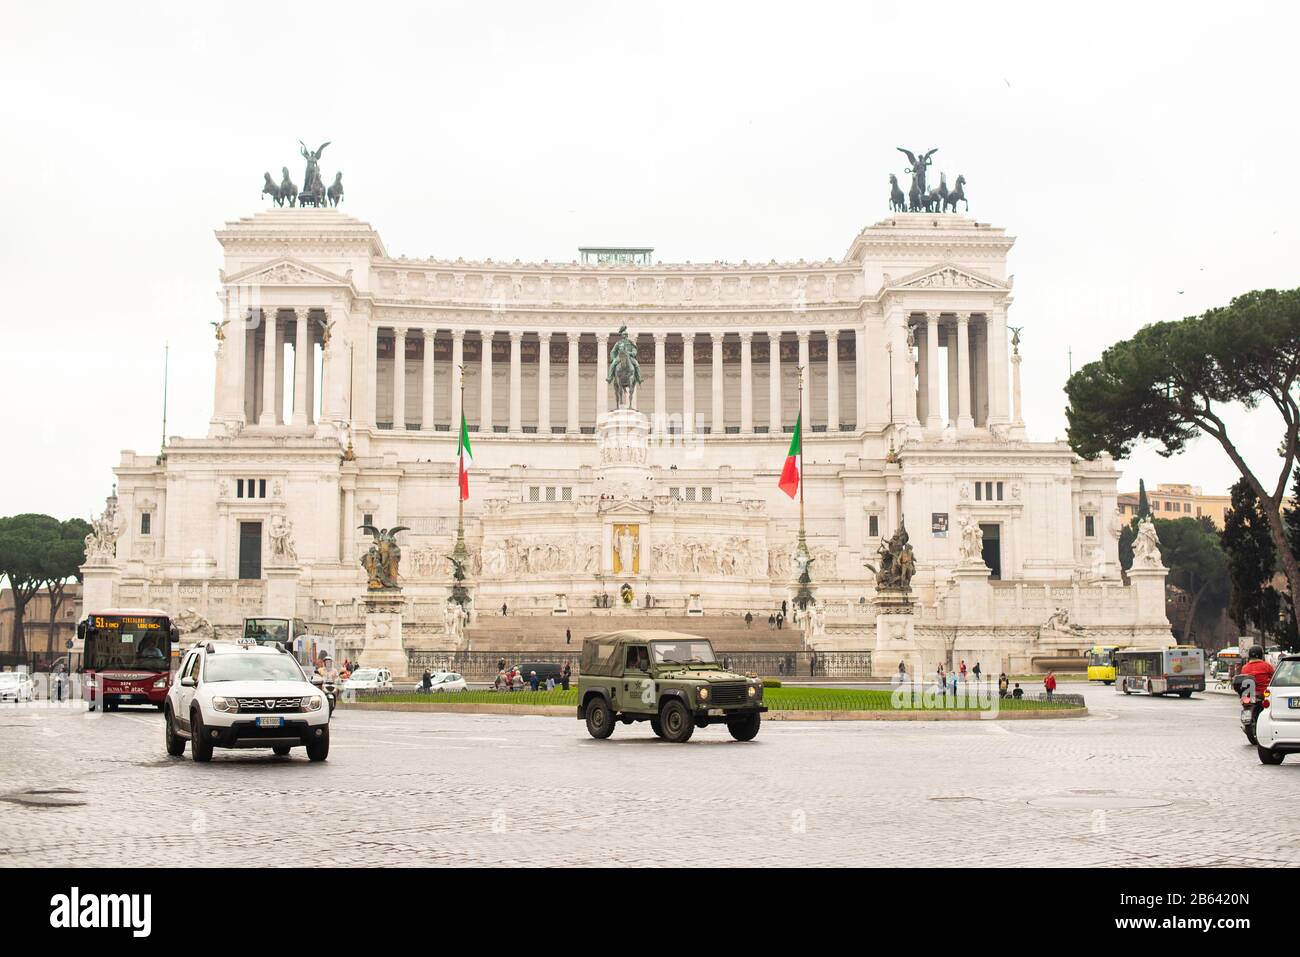 Rome. Italie - 22 mars 2017 : Monument national à Victor Emmanuel II ou II Vittoriano sur la Piazza Venezia, Rome. Banque D'Images